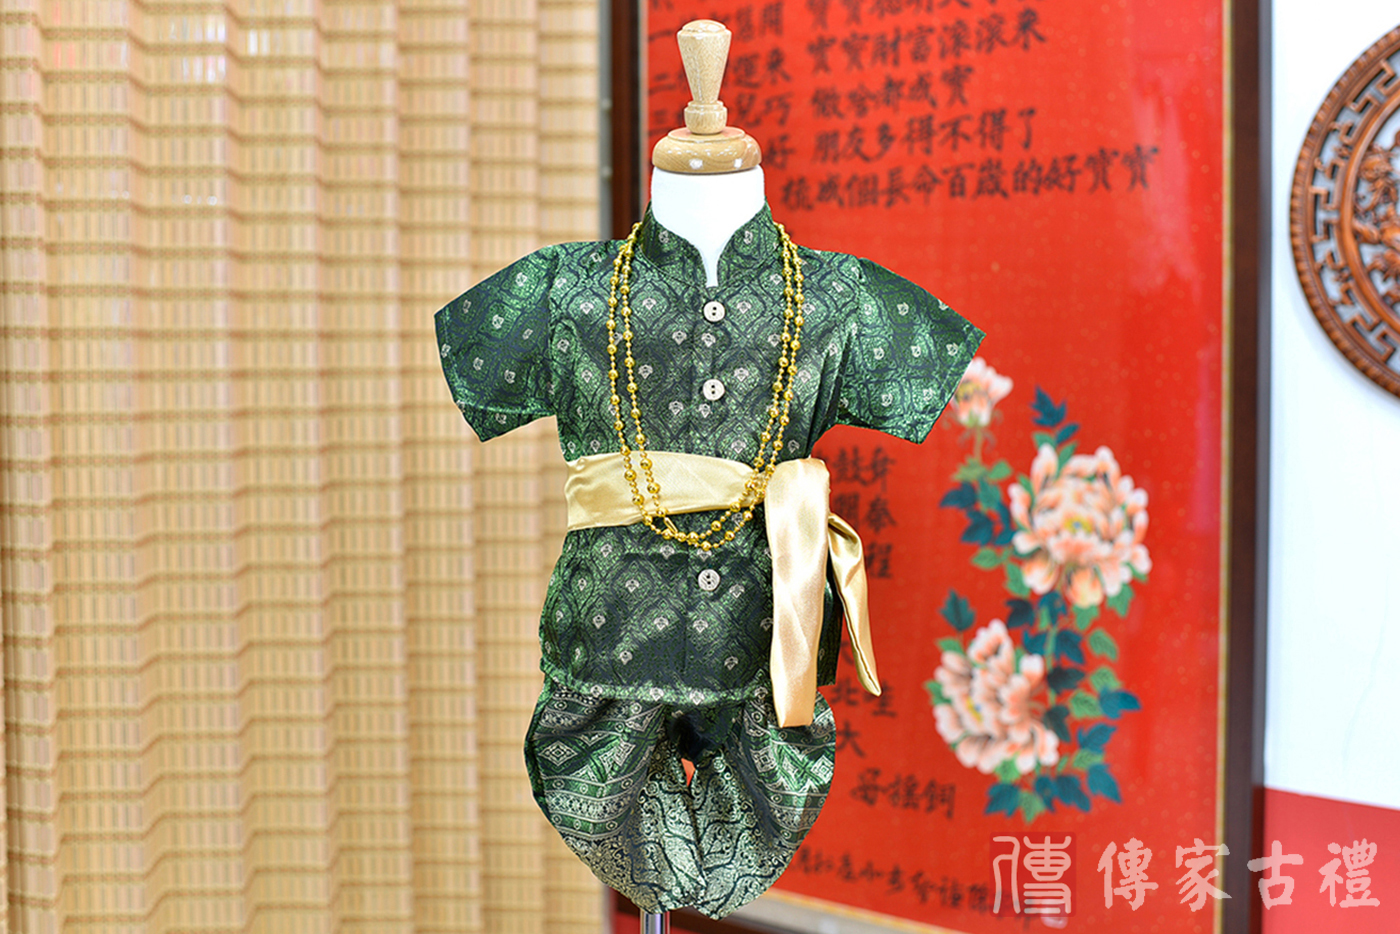 2024-02-24小孩皇室泰服古裝禮服。深綠色帶泰國傳統圖騰織紋的上衣搭配相同圖騰的褲裝的泰式古裝禮服。照片集